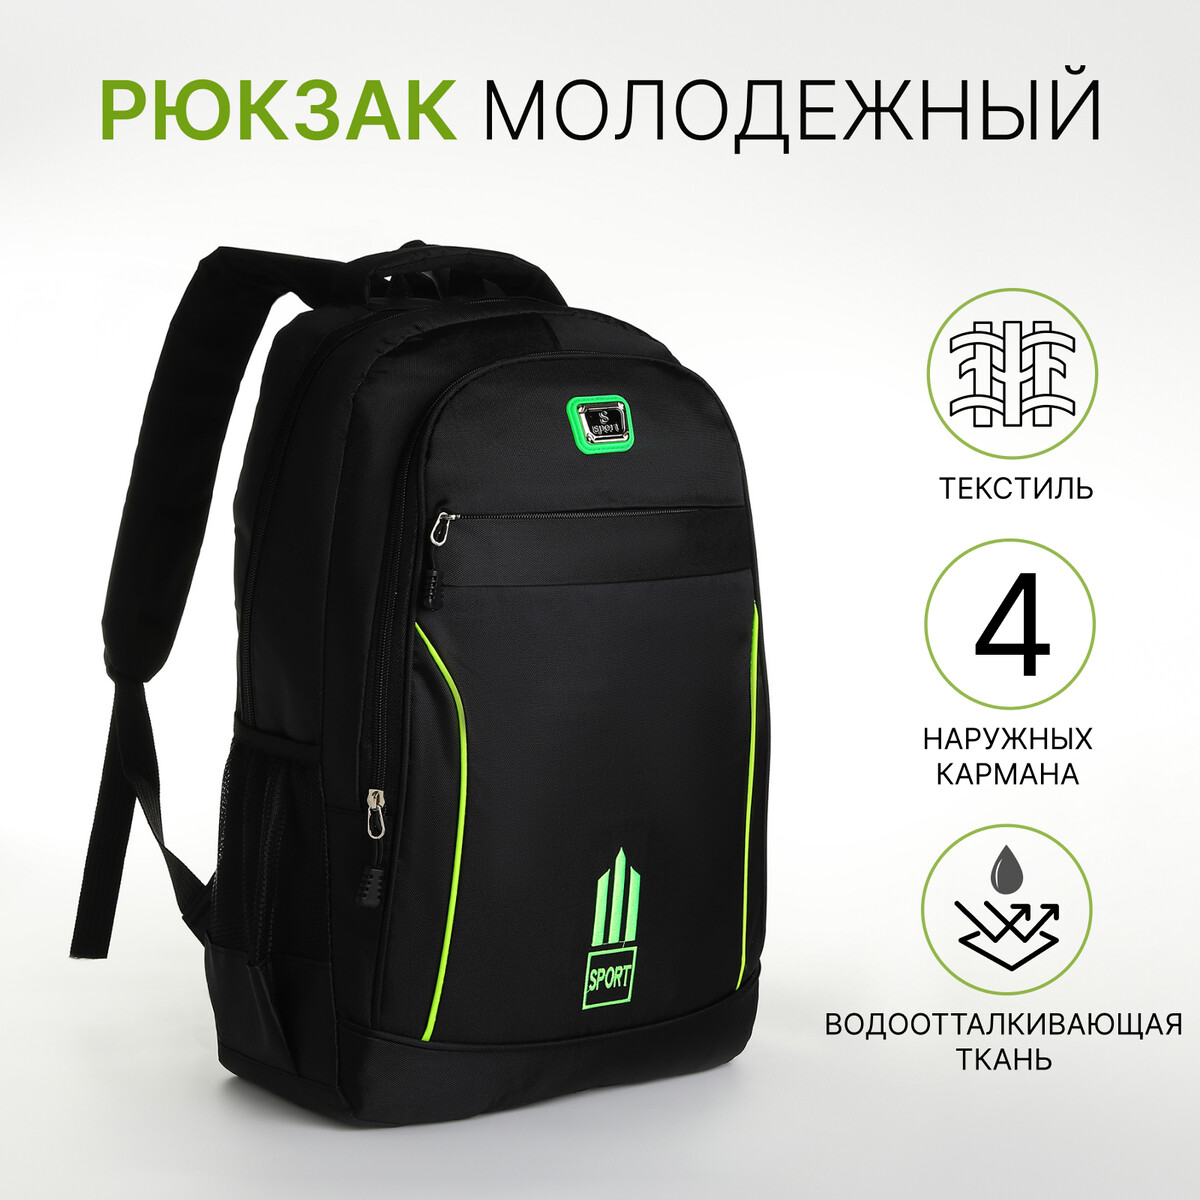 Рюкзак молодежный из текстиля на молнии, 4 кармана, цвет черный/зеленый рюкзак молодежный из текстиля на молнии 2 кармана зеленый